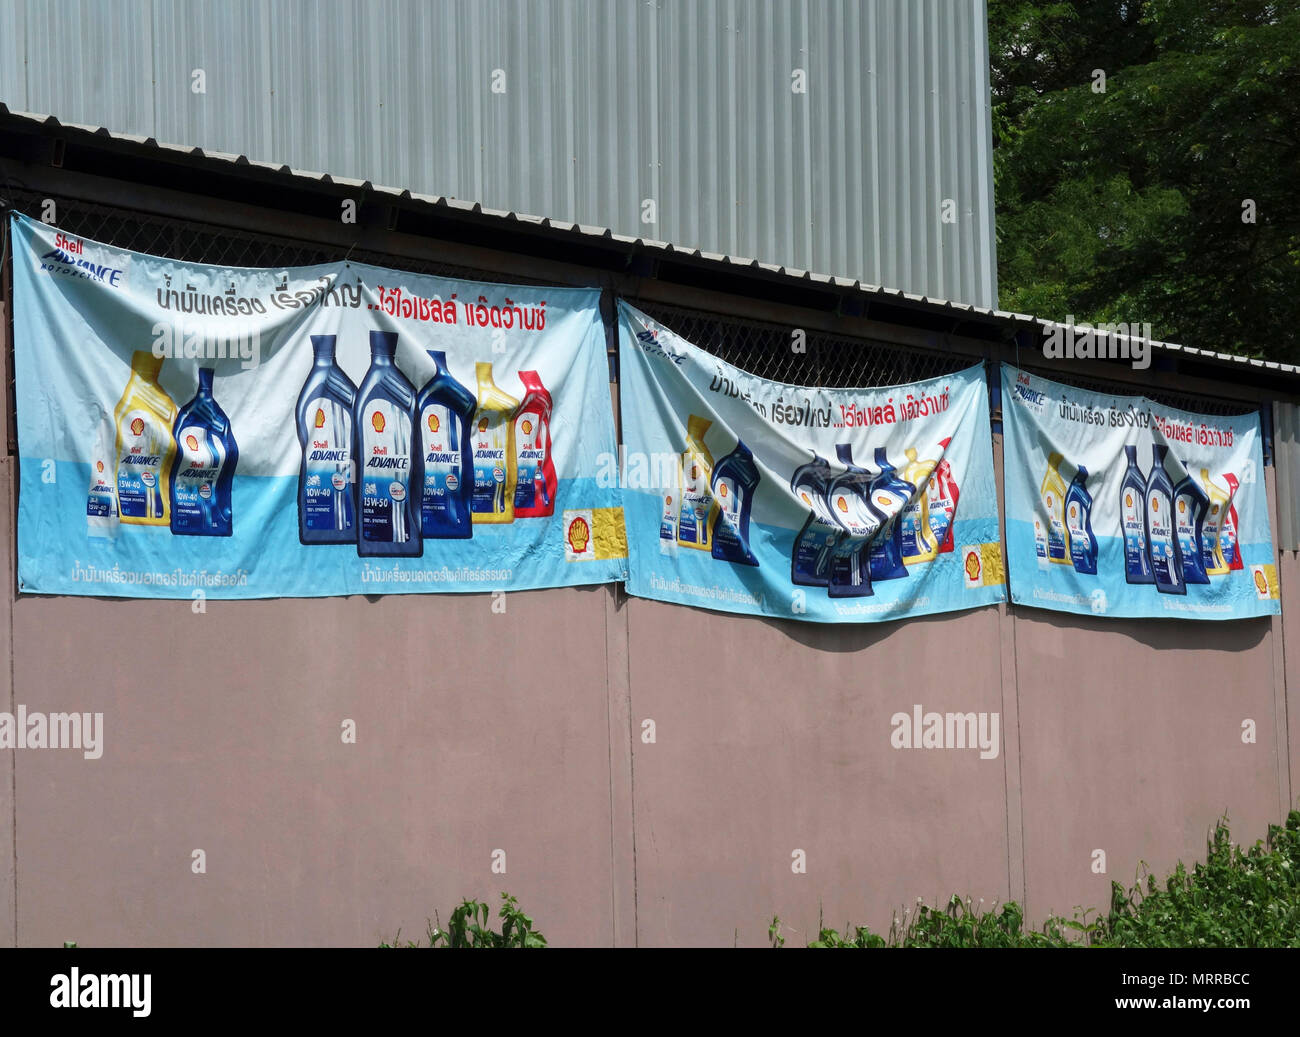 Vinil cartelloni pubblicità Shell Petroleum e additivi per olio, Udon Thani, Isaan, Thailandia Foto Stock